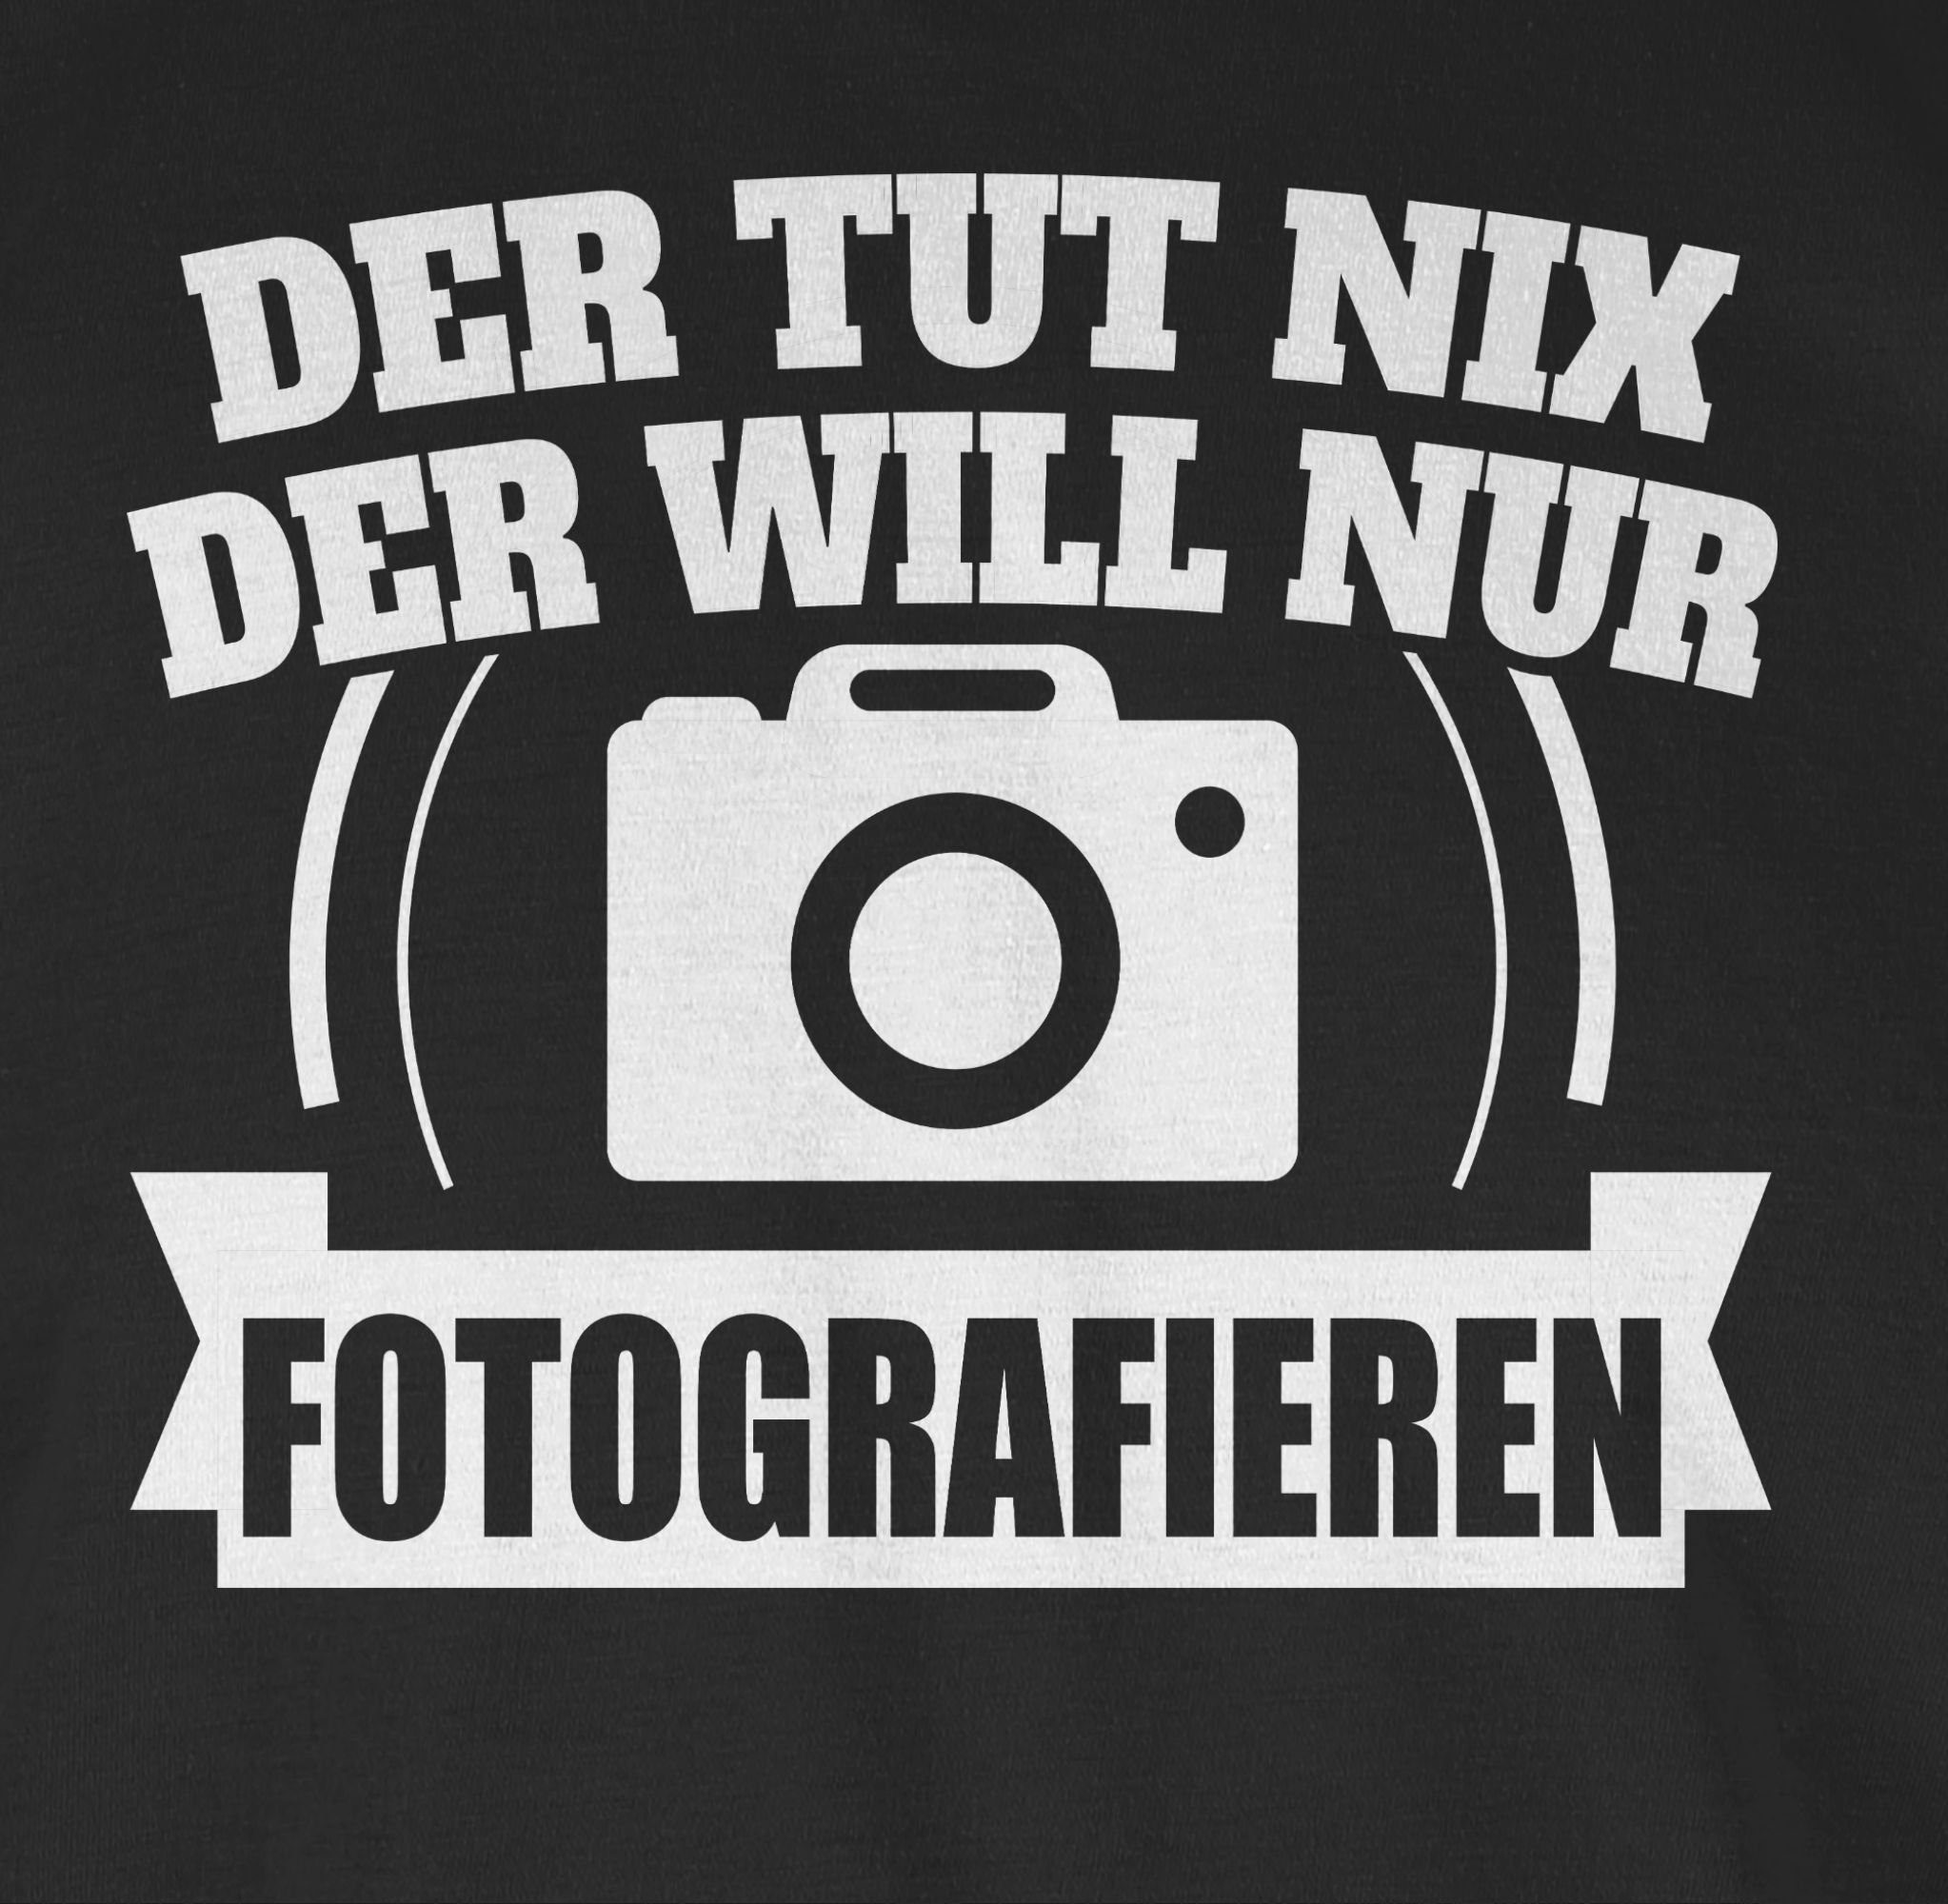 Shirtracer T-Shirt Der tut nix 1 Spruch Sprüche nur Statement Fotografieren mit der will Schwarz